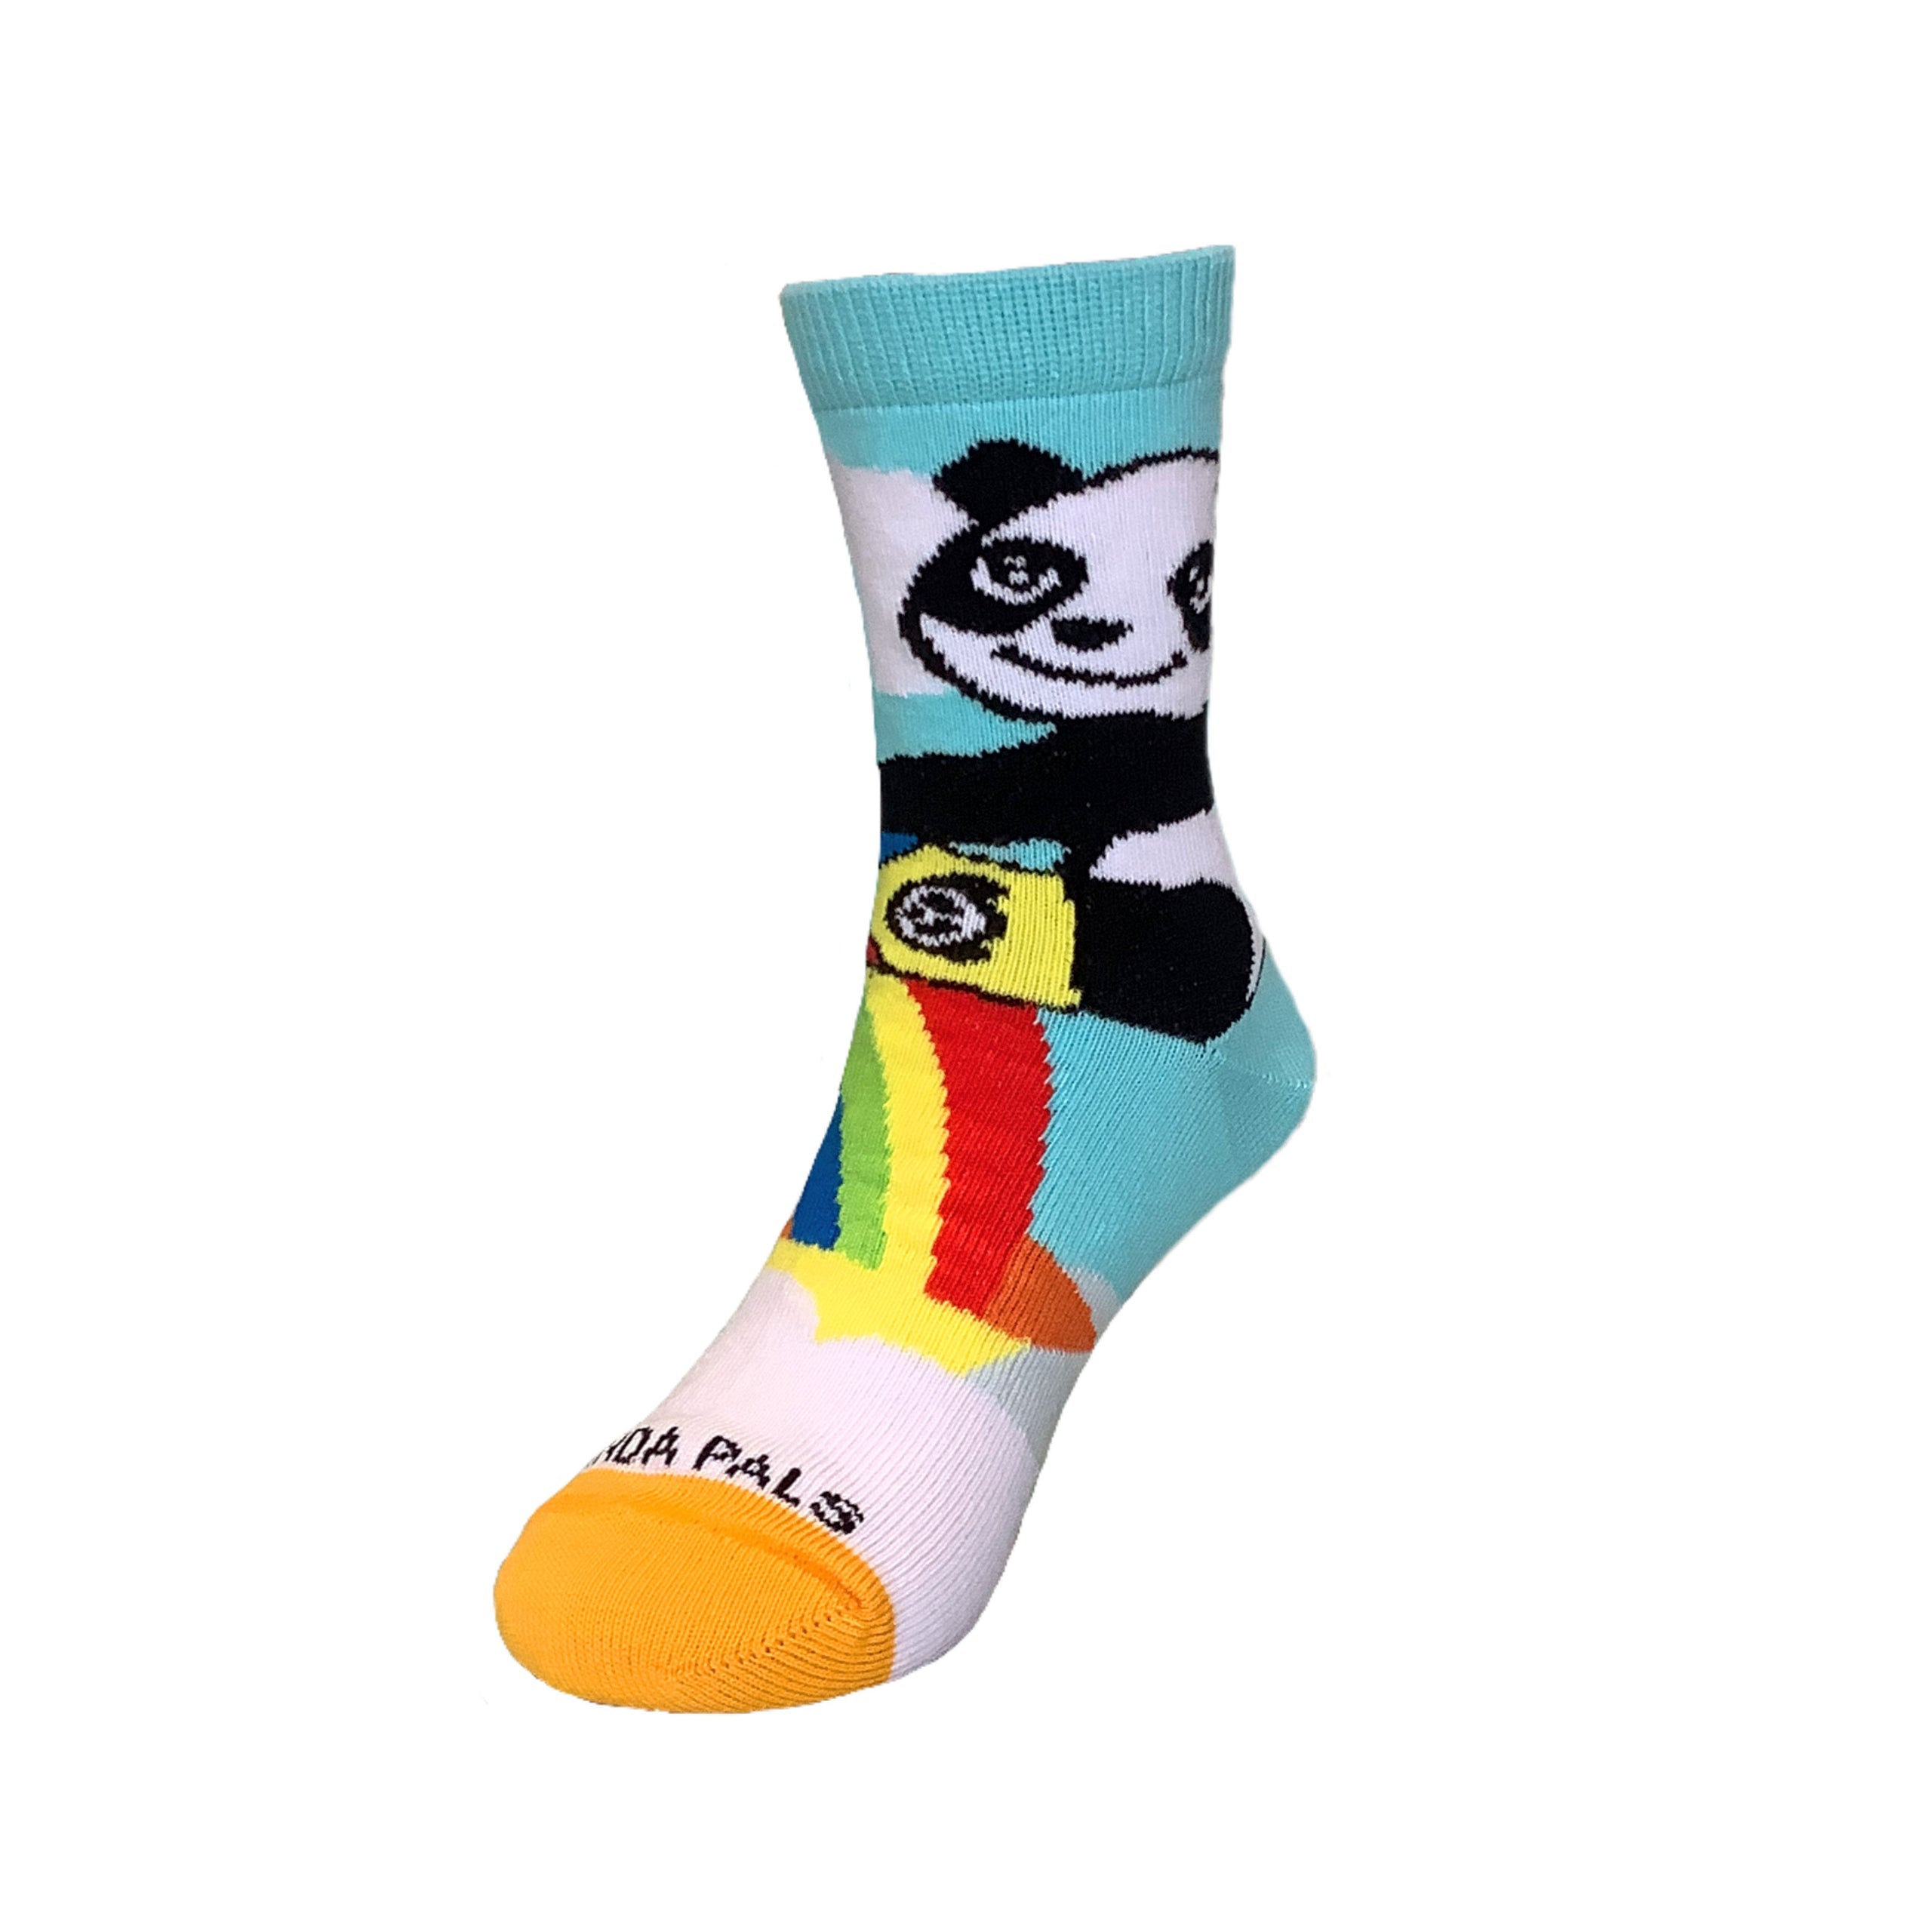 Panda Hugging Rainbow Socks from the Sock Panda (Ages 3-7)